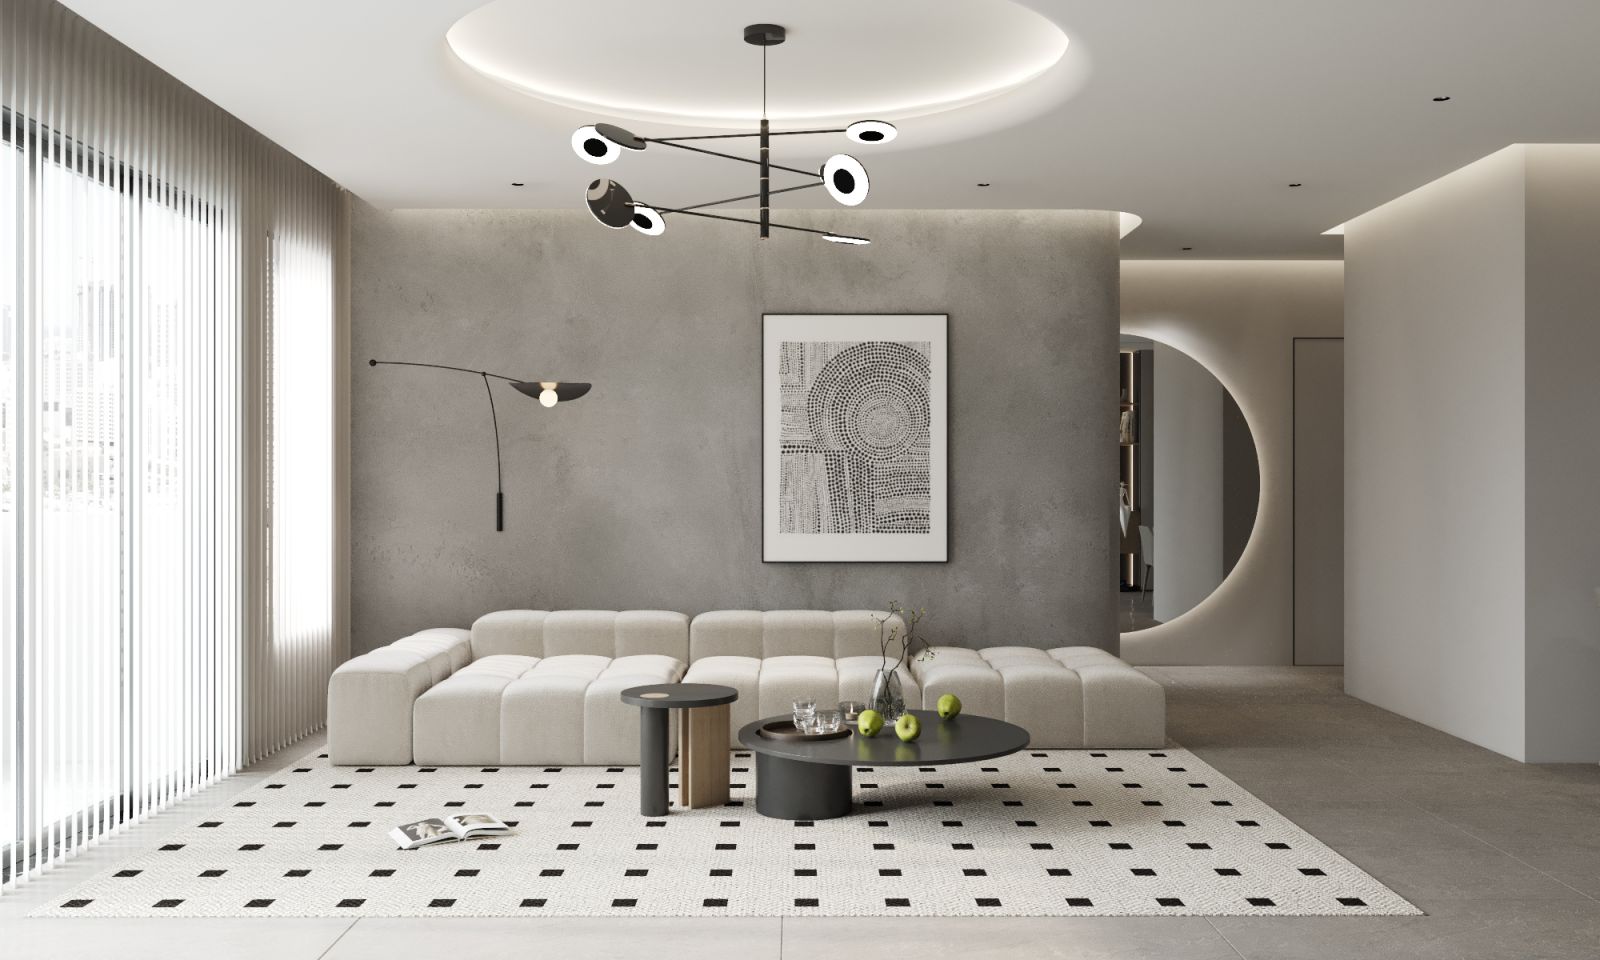 Thiết kế nội thất chung cư hiện đại tối giản